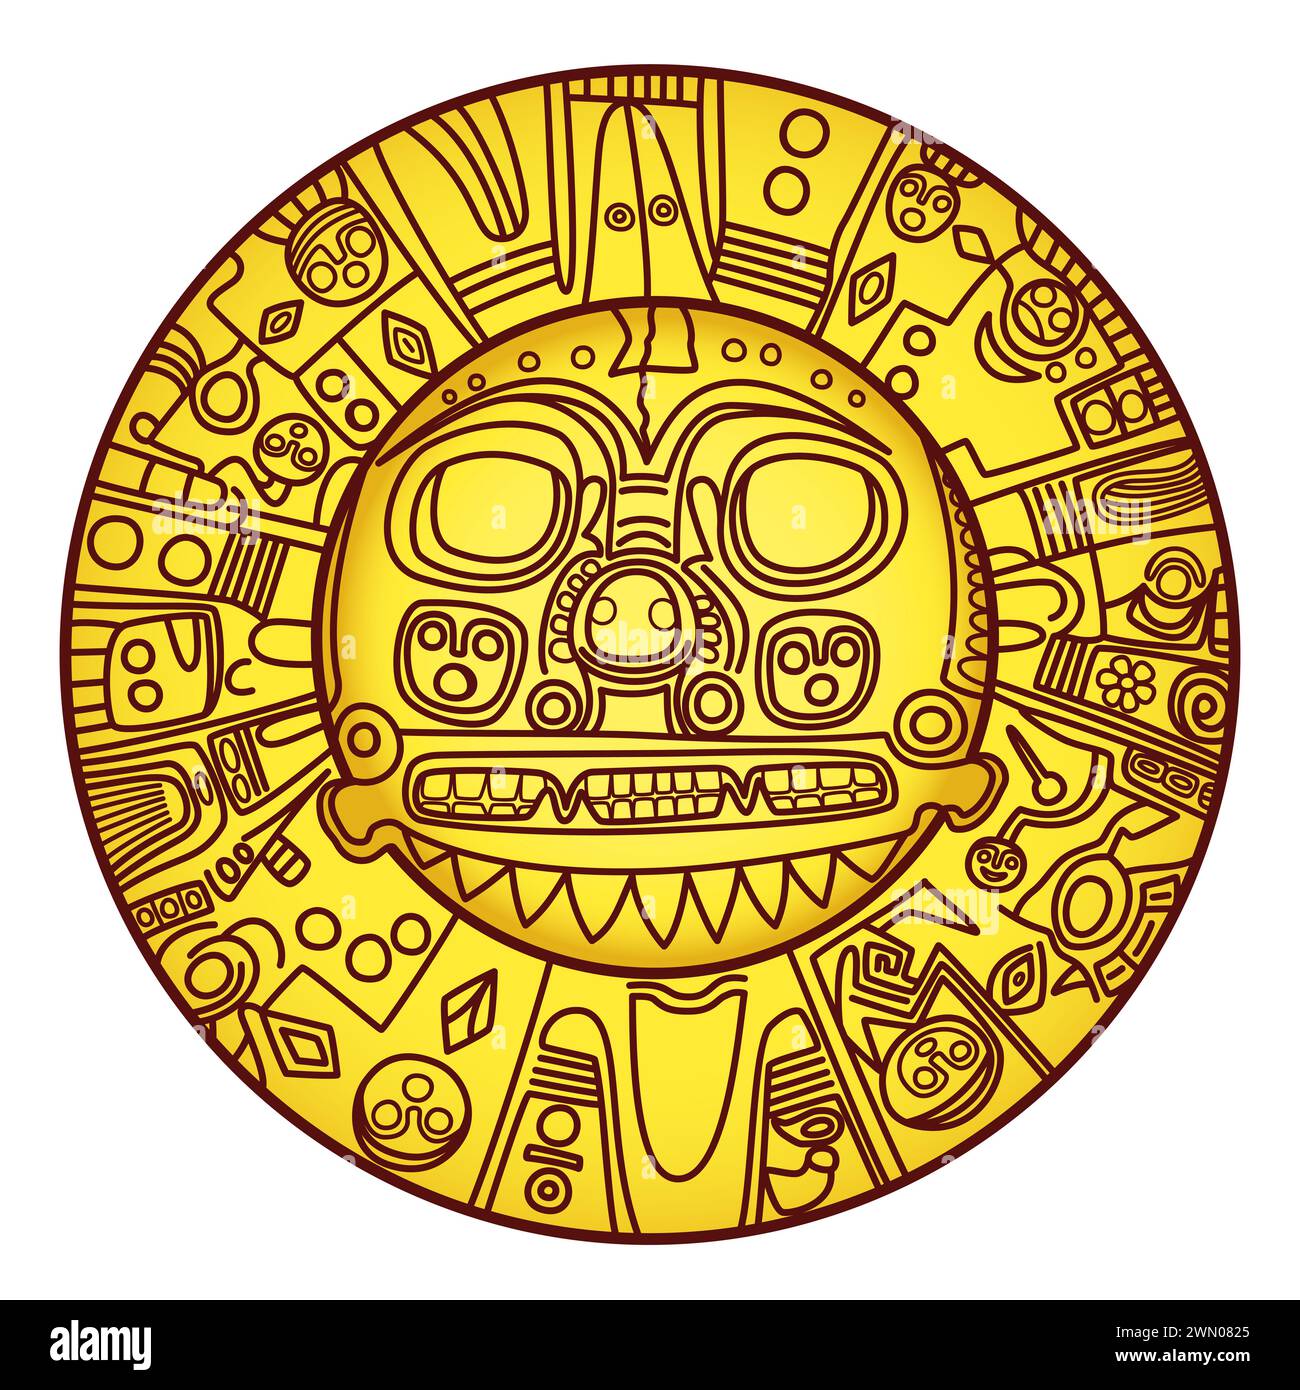 Il sole d'oro di Echenique. Piatto dorato pre-ispanico di significato sconosciuto, che forse rappresenta il dio del sole Inti. Indossato come piastra seno dai righelli Inca. Foto Stock